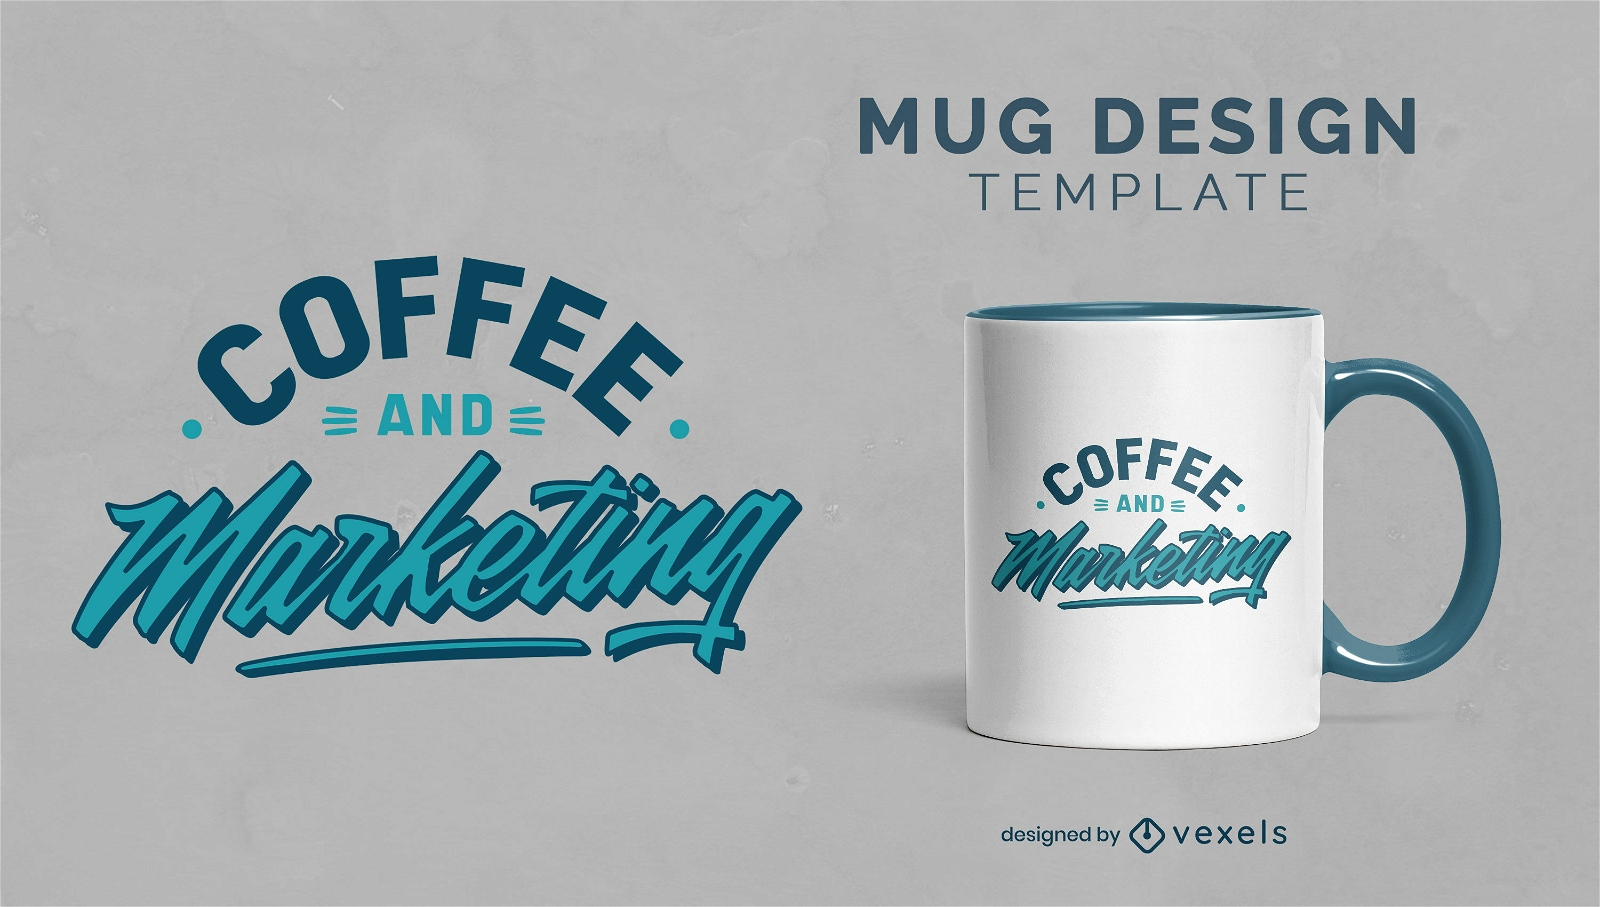 Coffee and marketing job mug template